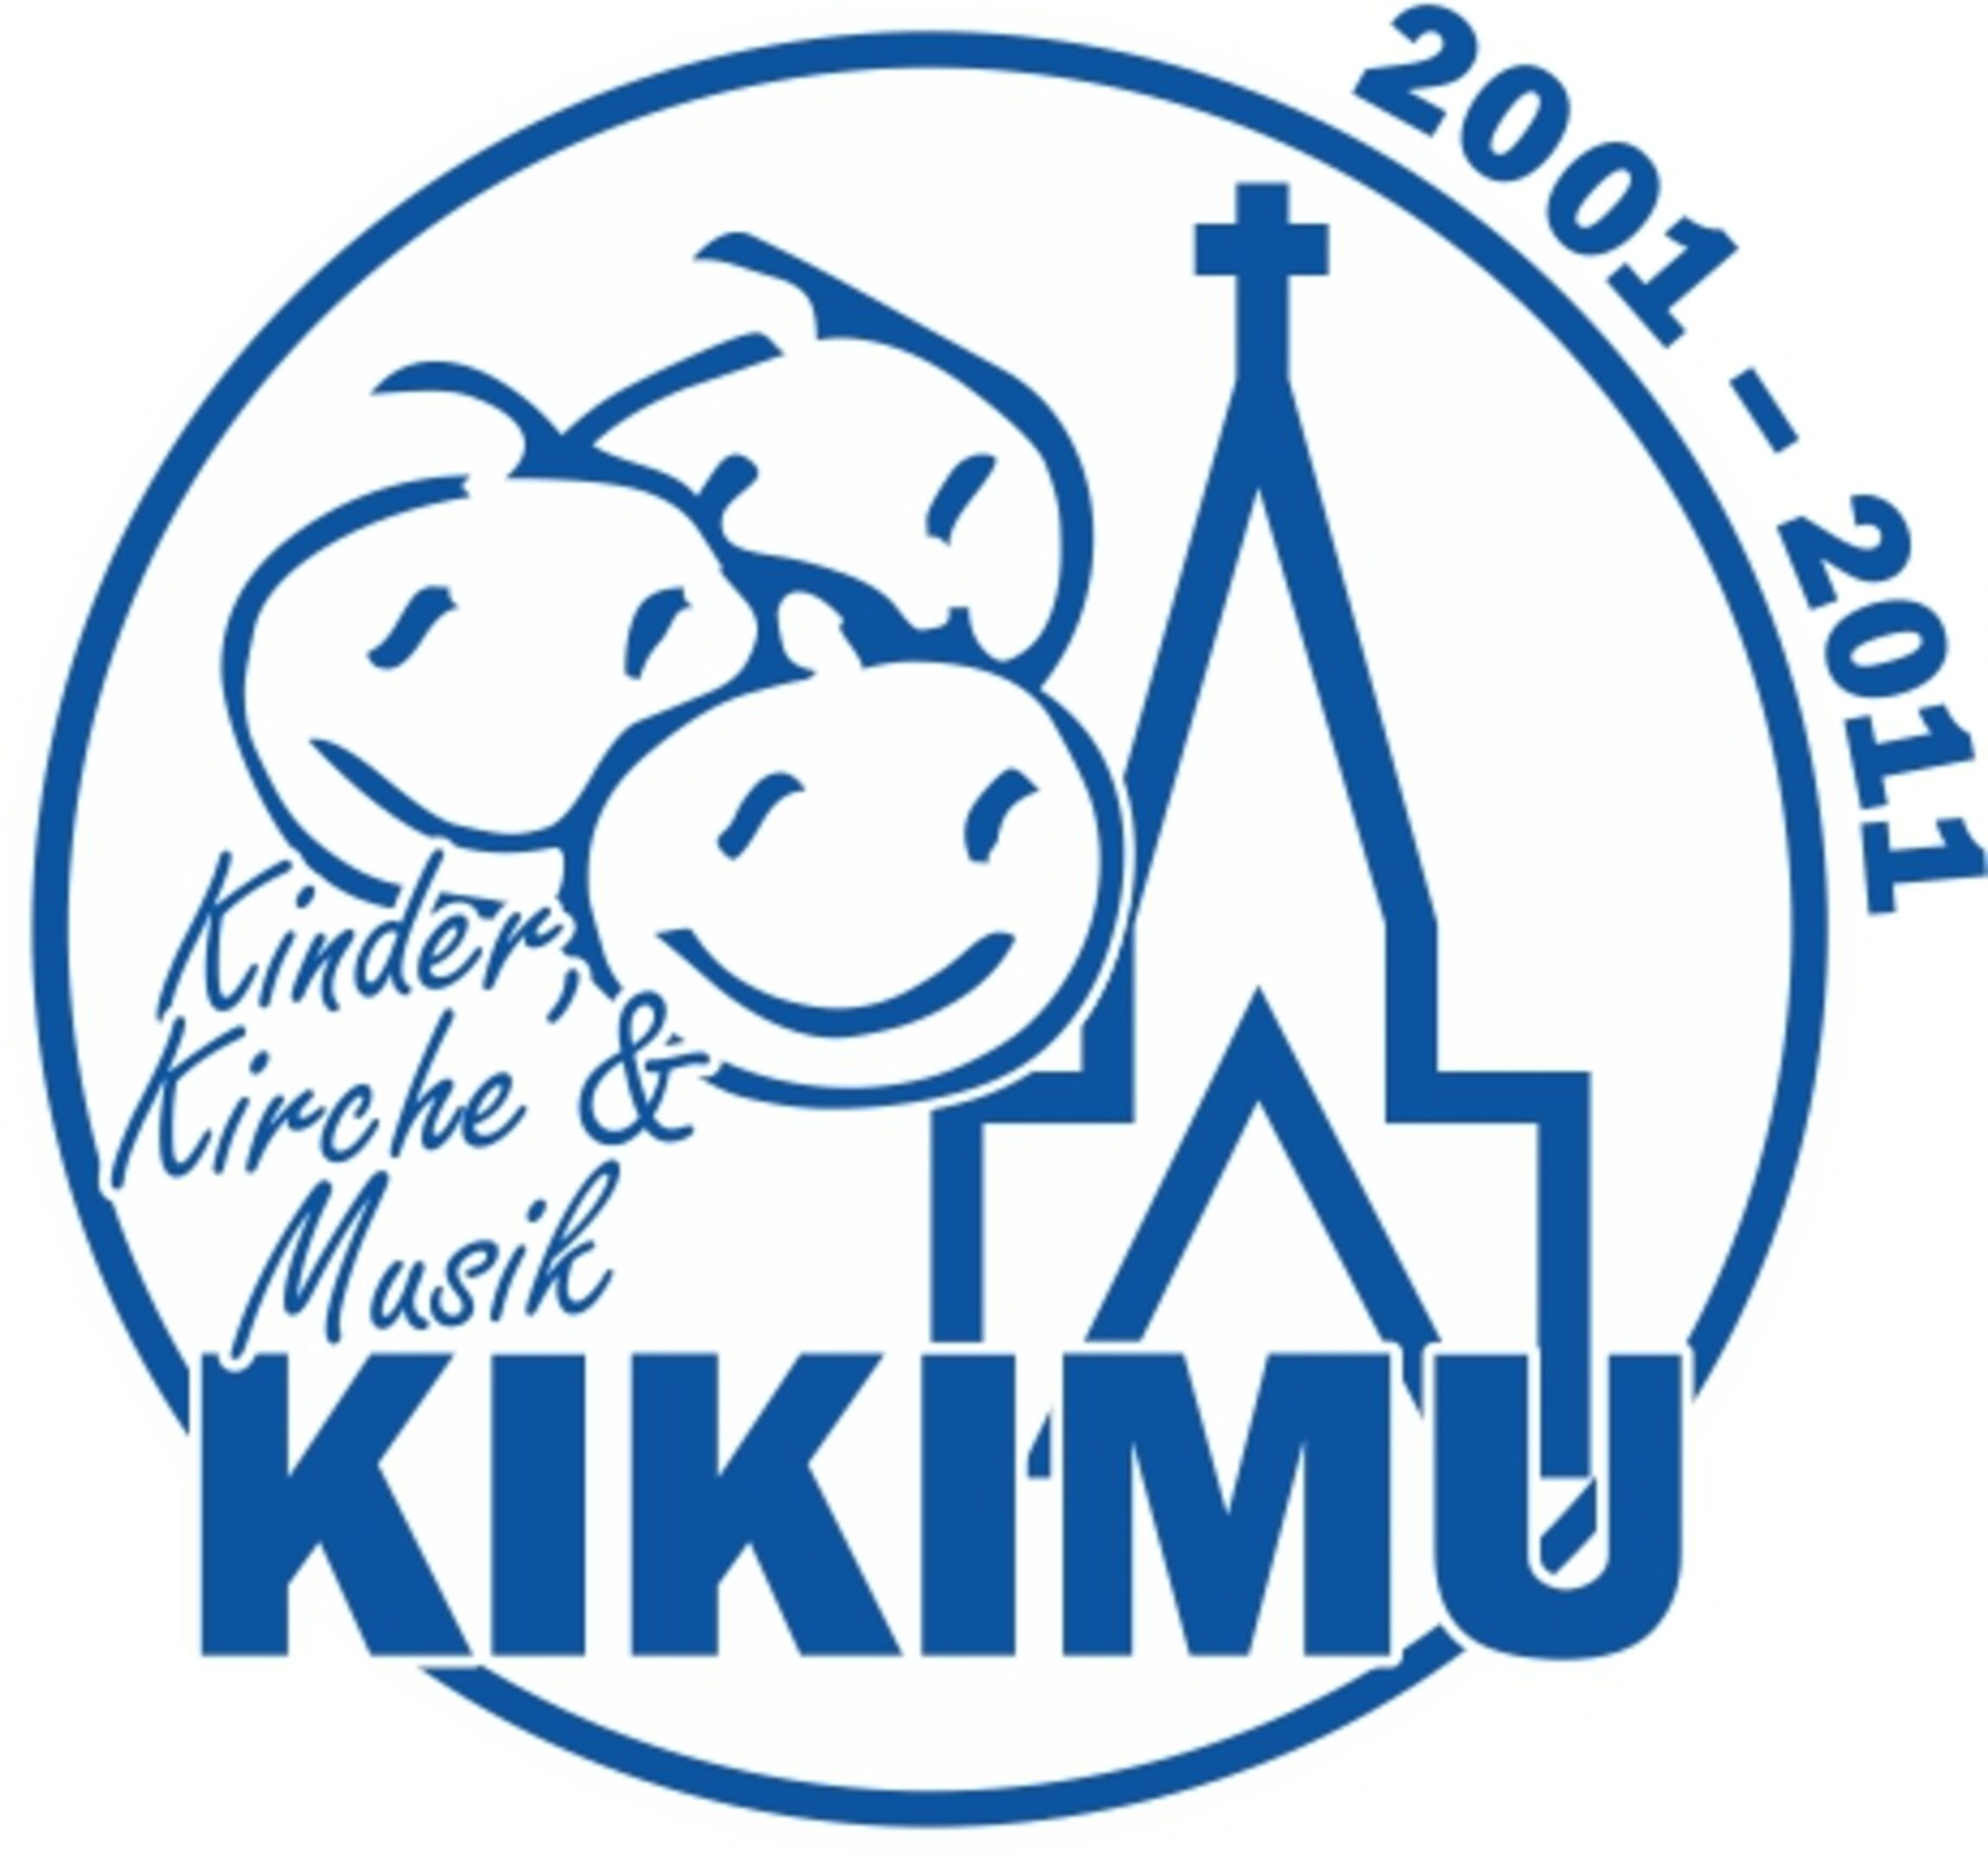 kikimu-logo-300dpi